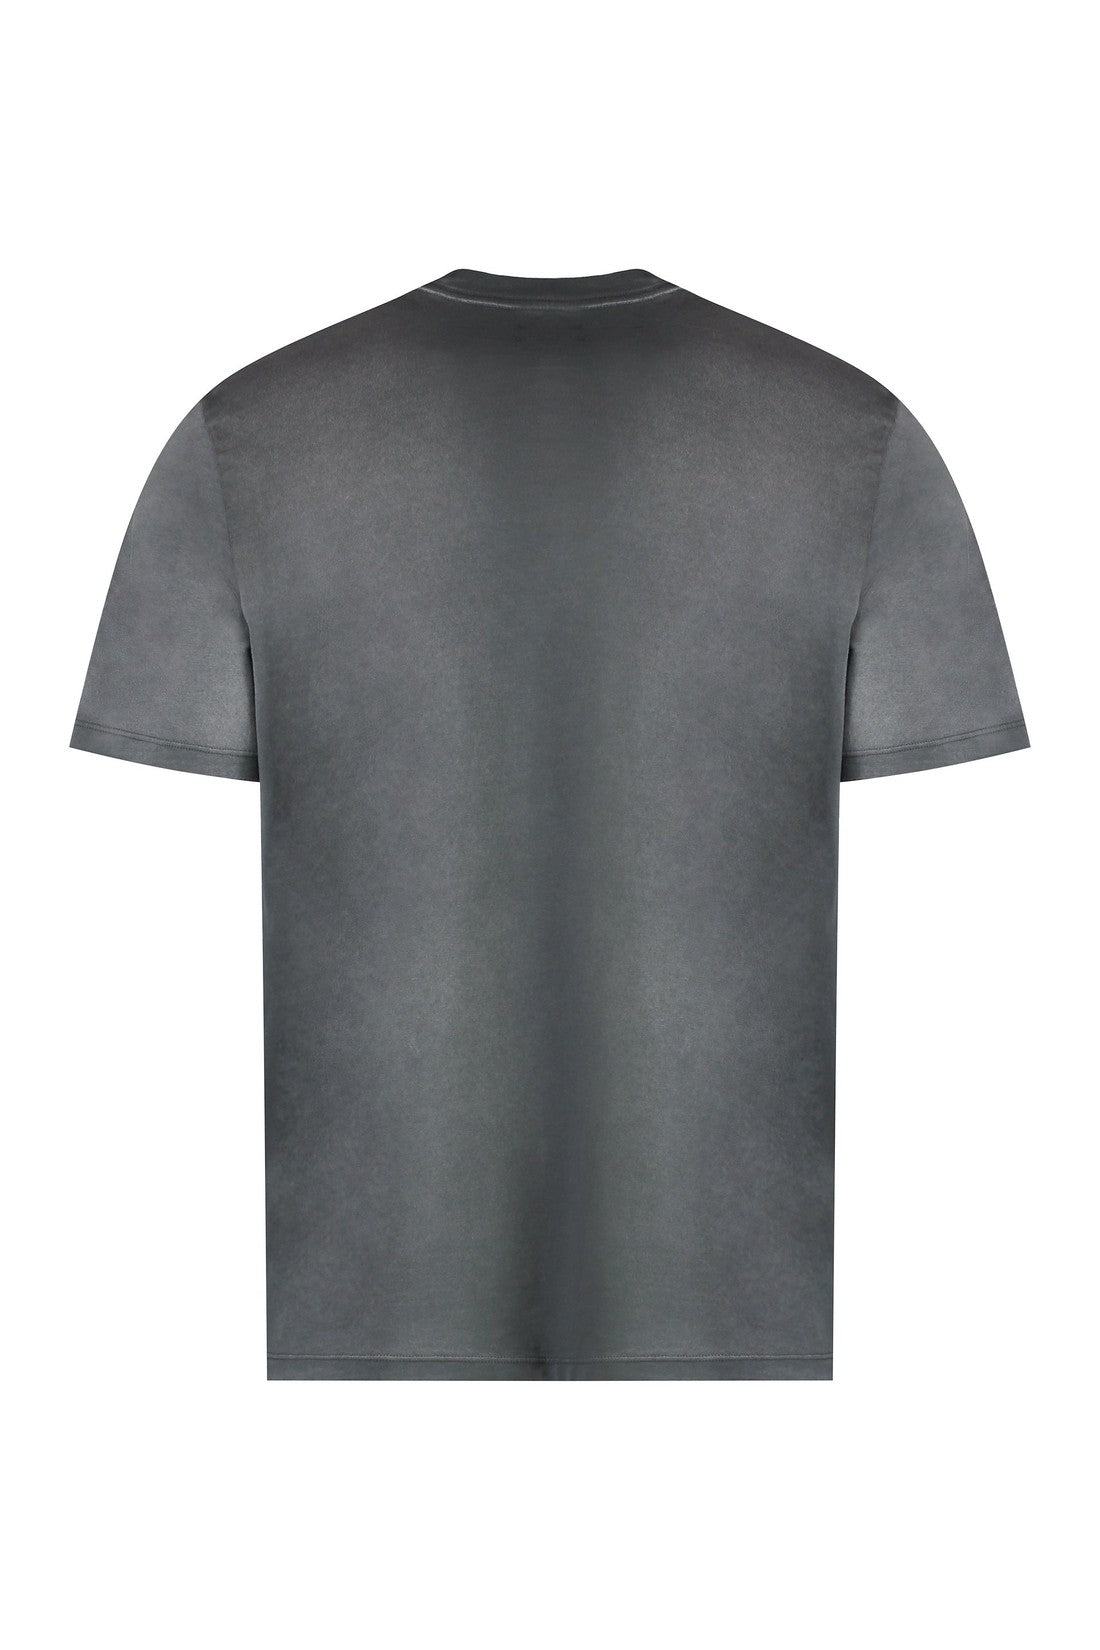 AMIRI-OUTLET-SALE-Cotton crew-neck T-shirt-ARCHIVIST